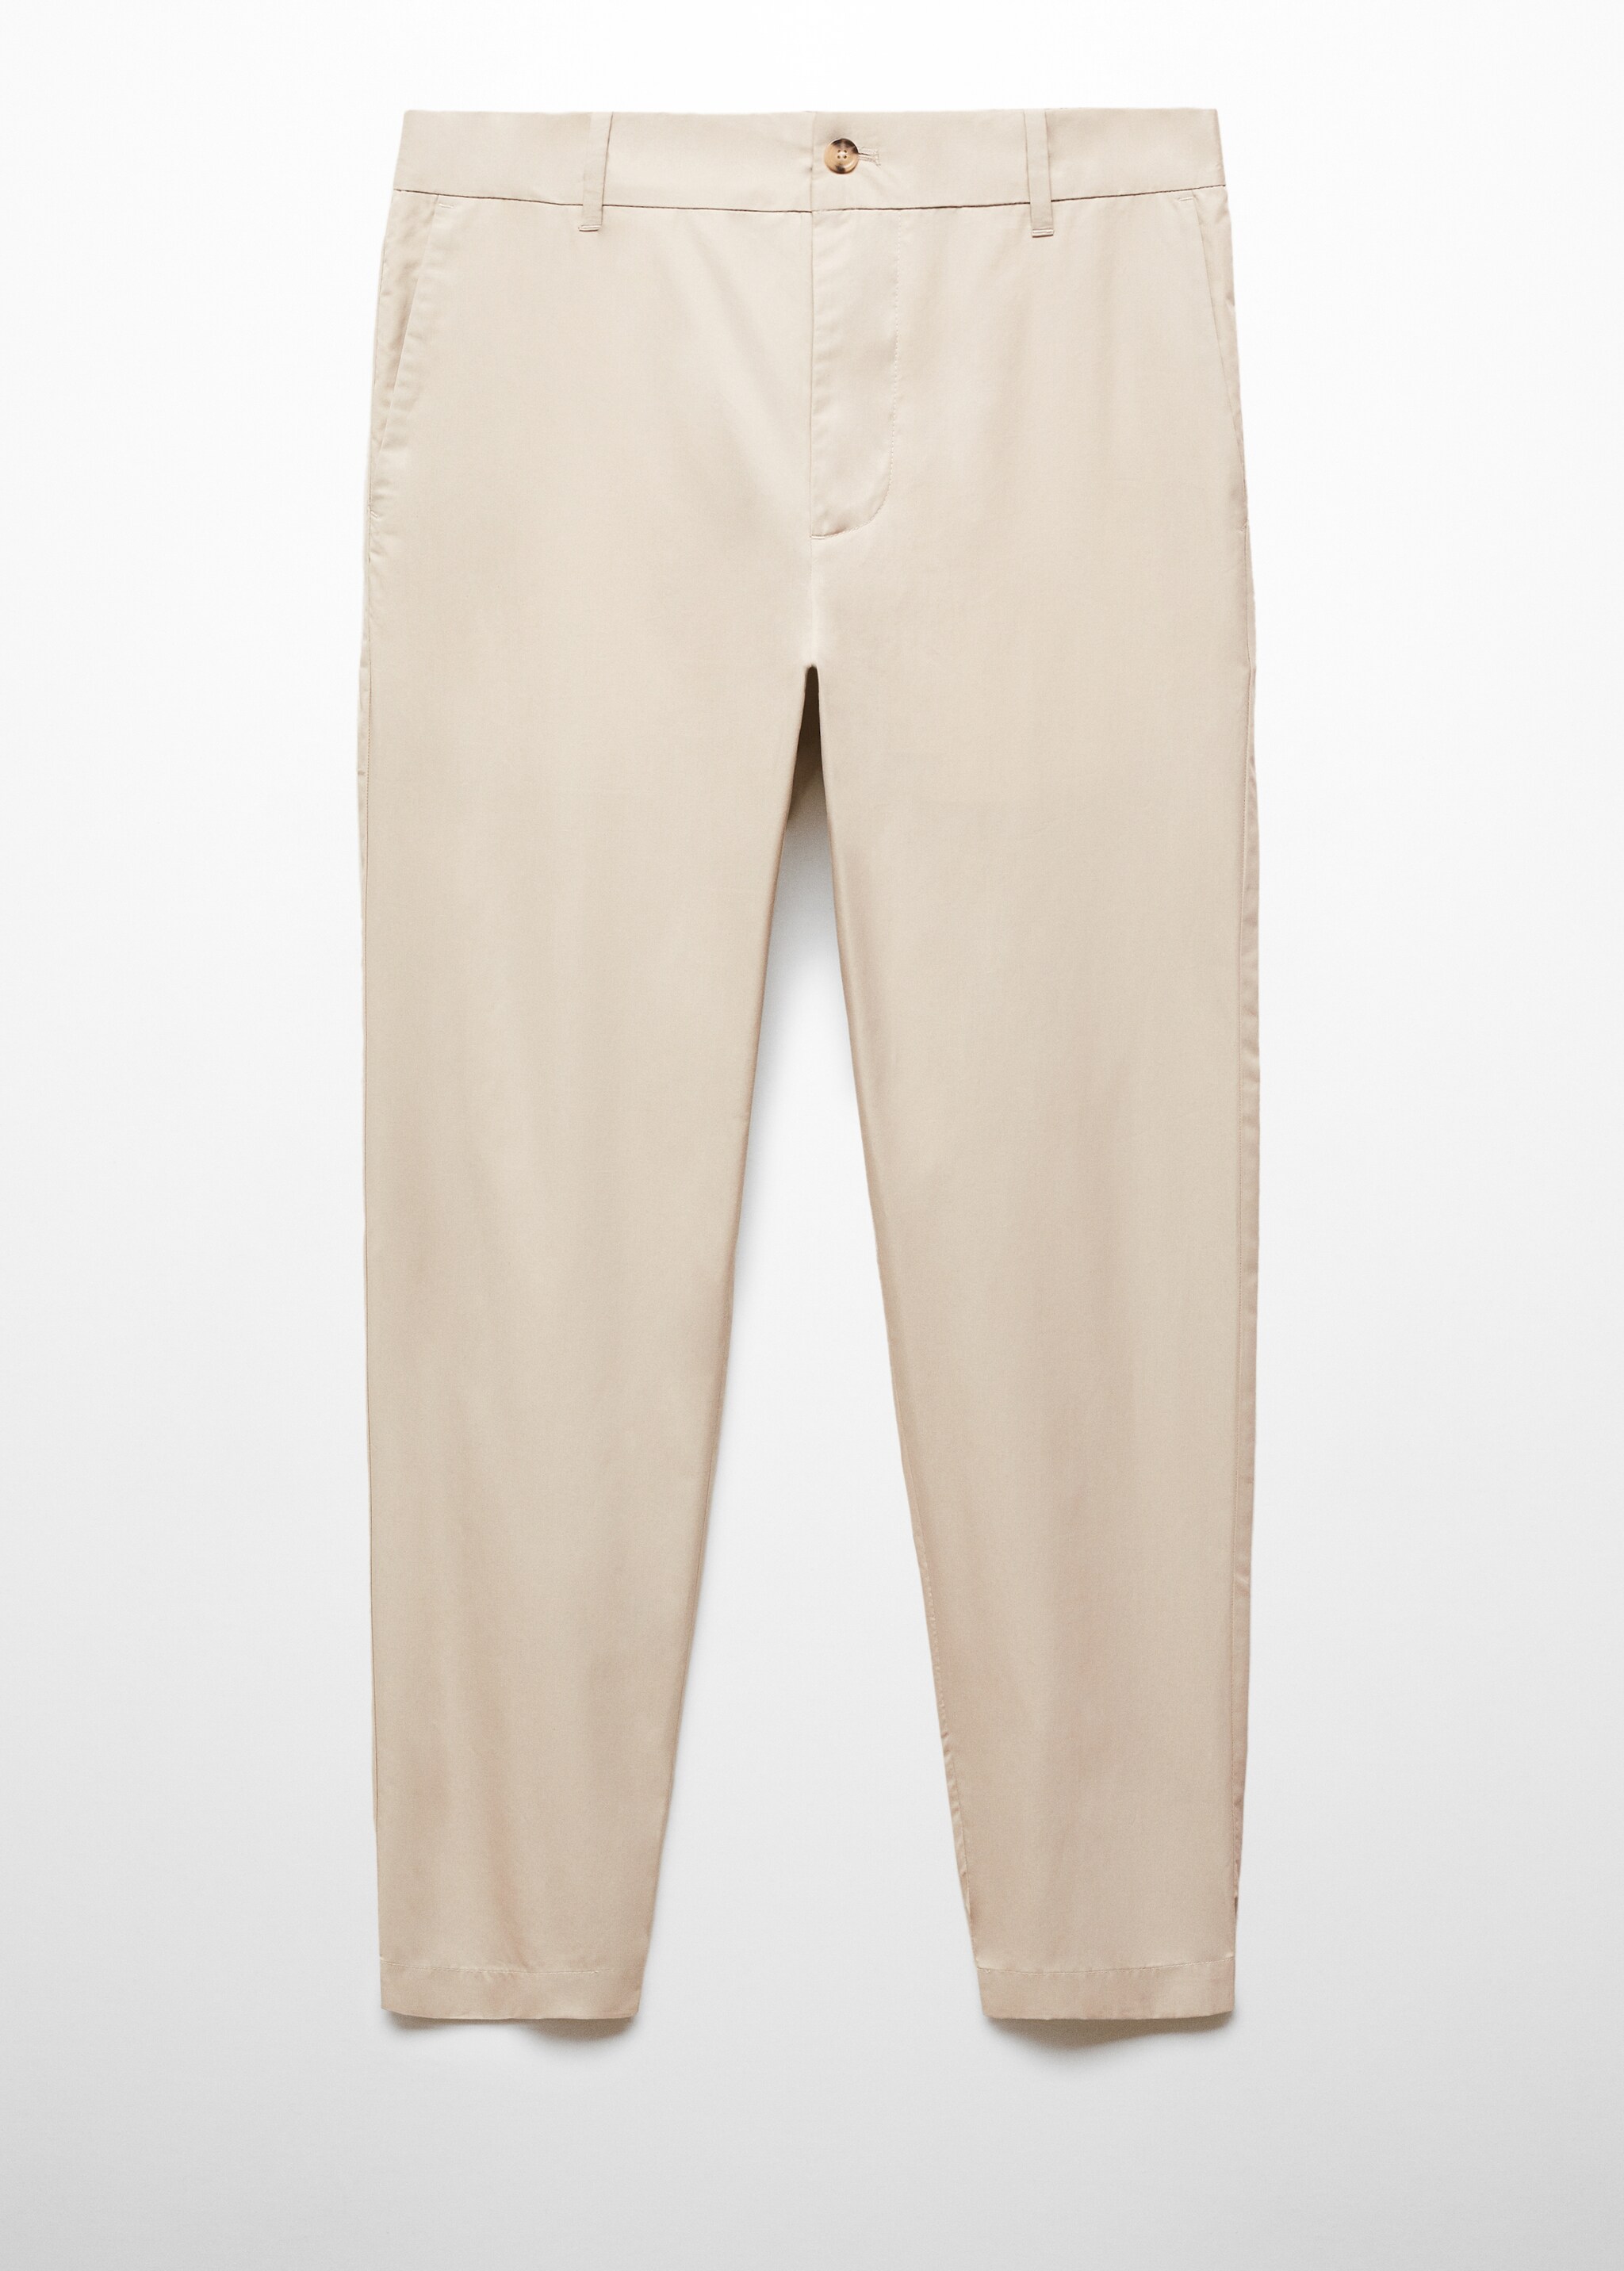 Pantalón slim fit 100% algodón - Artículo sin modelo